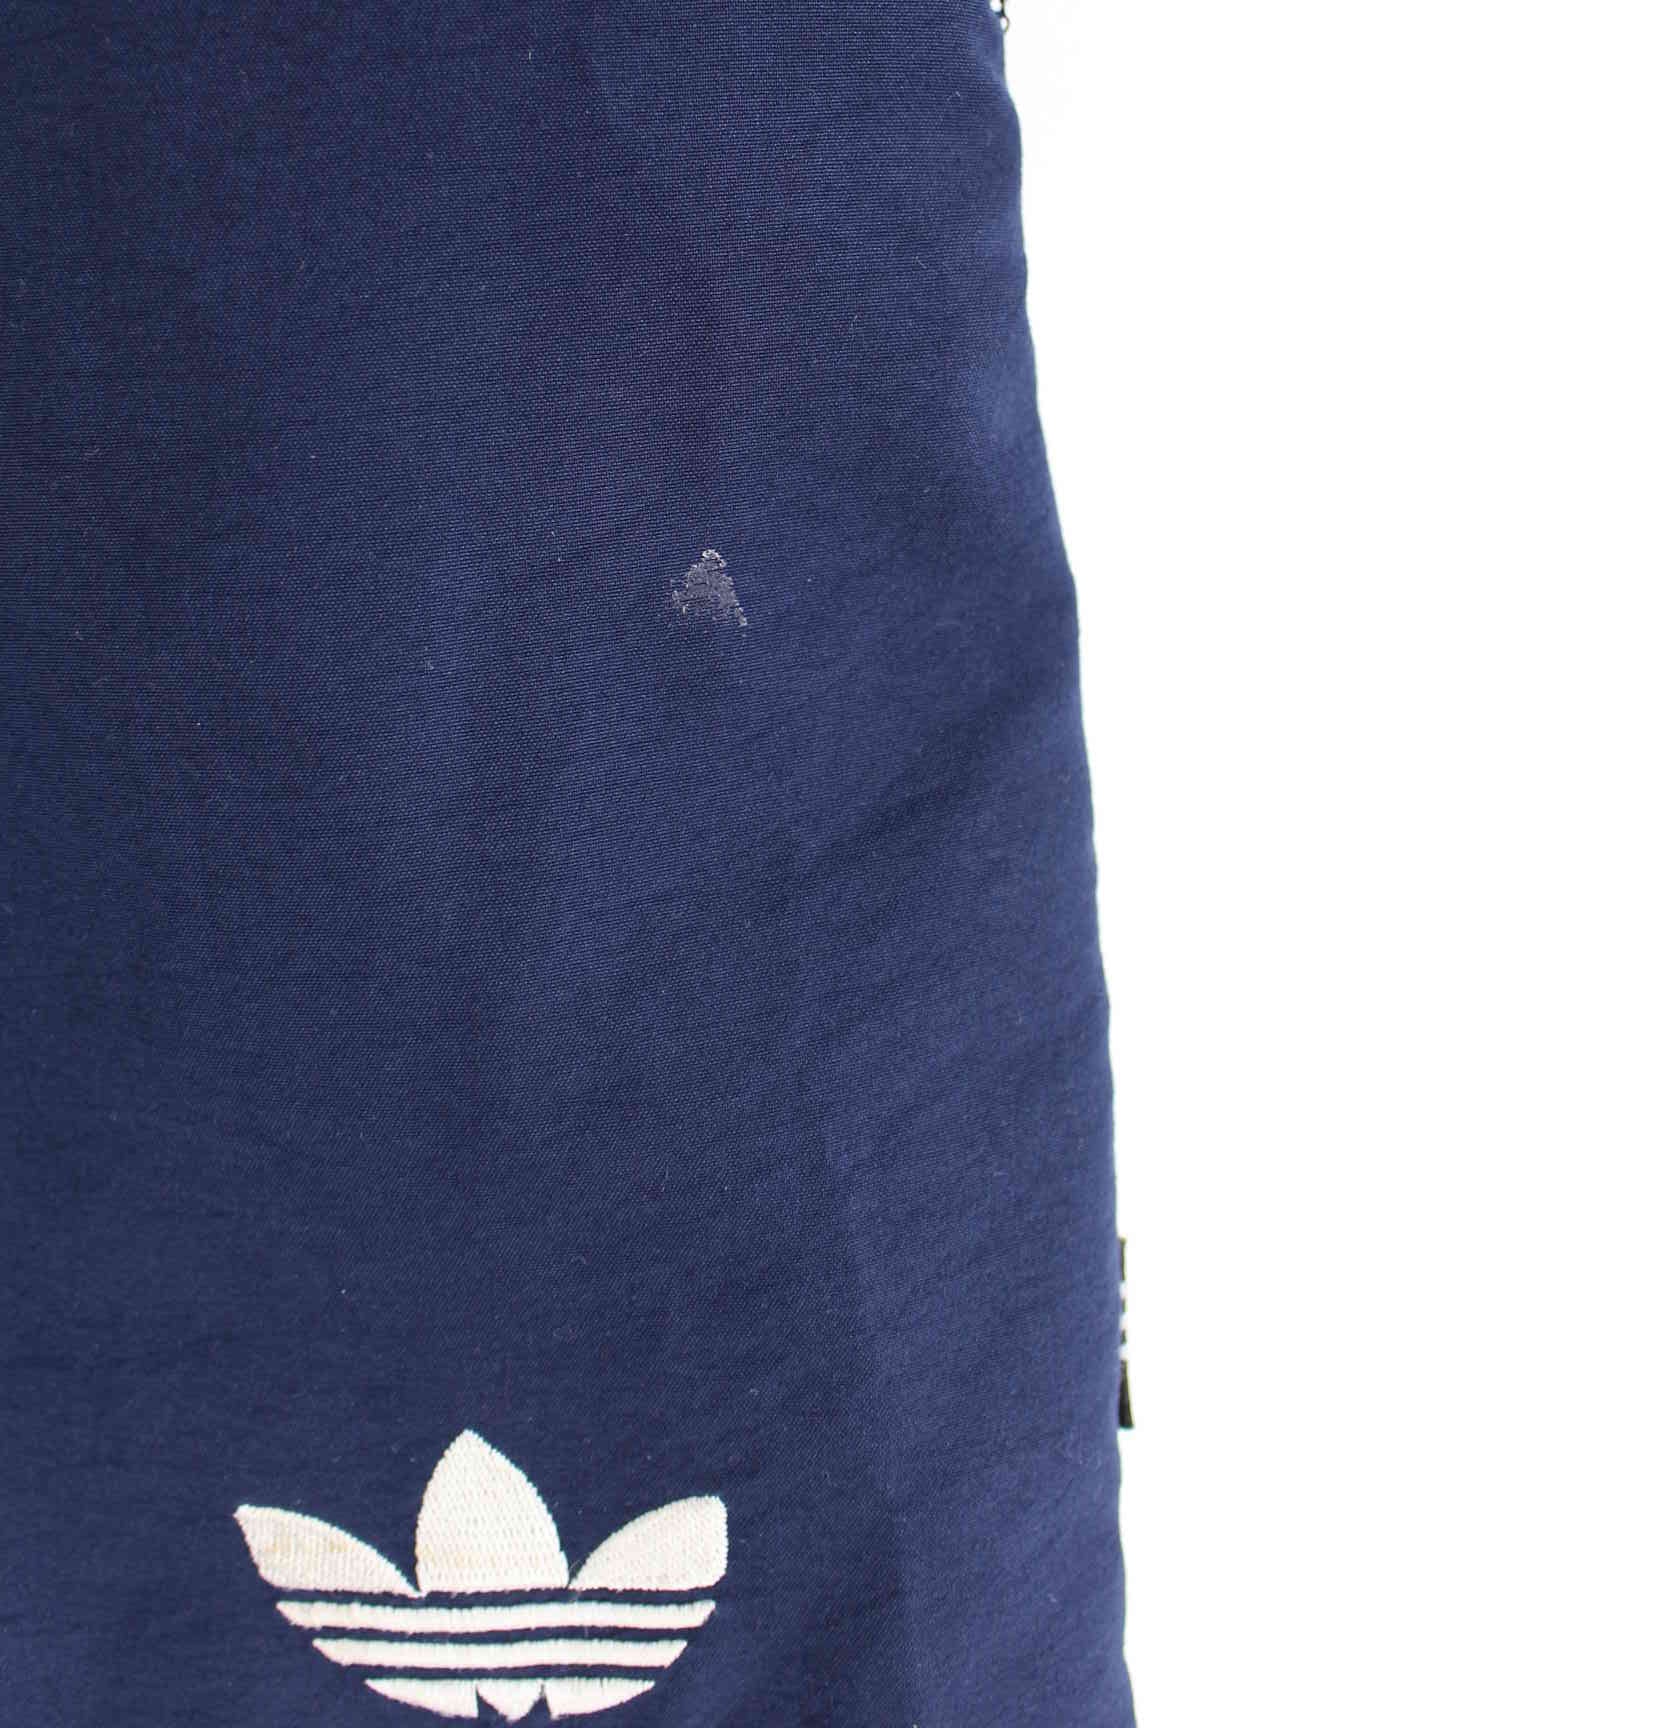 Adidas 90s Vintage Trefoil Shorts Blau L (detail image 1)